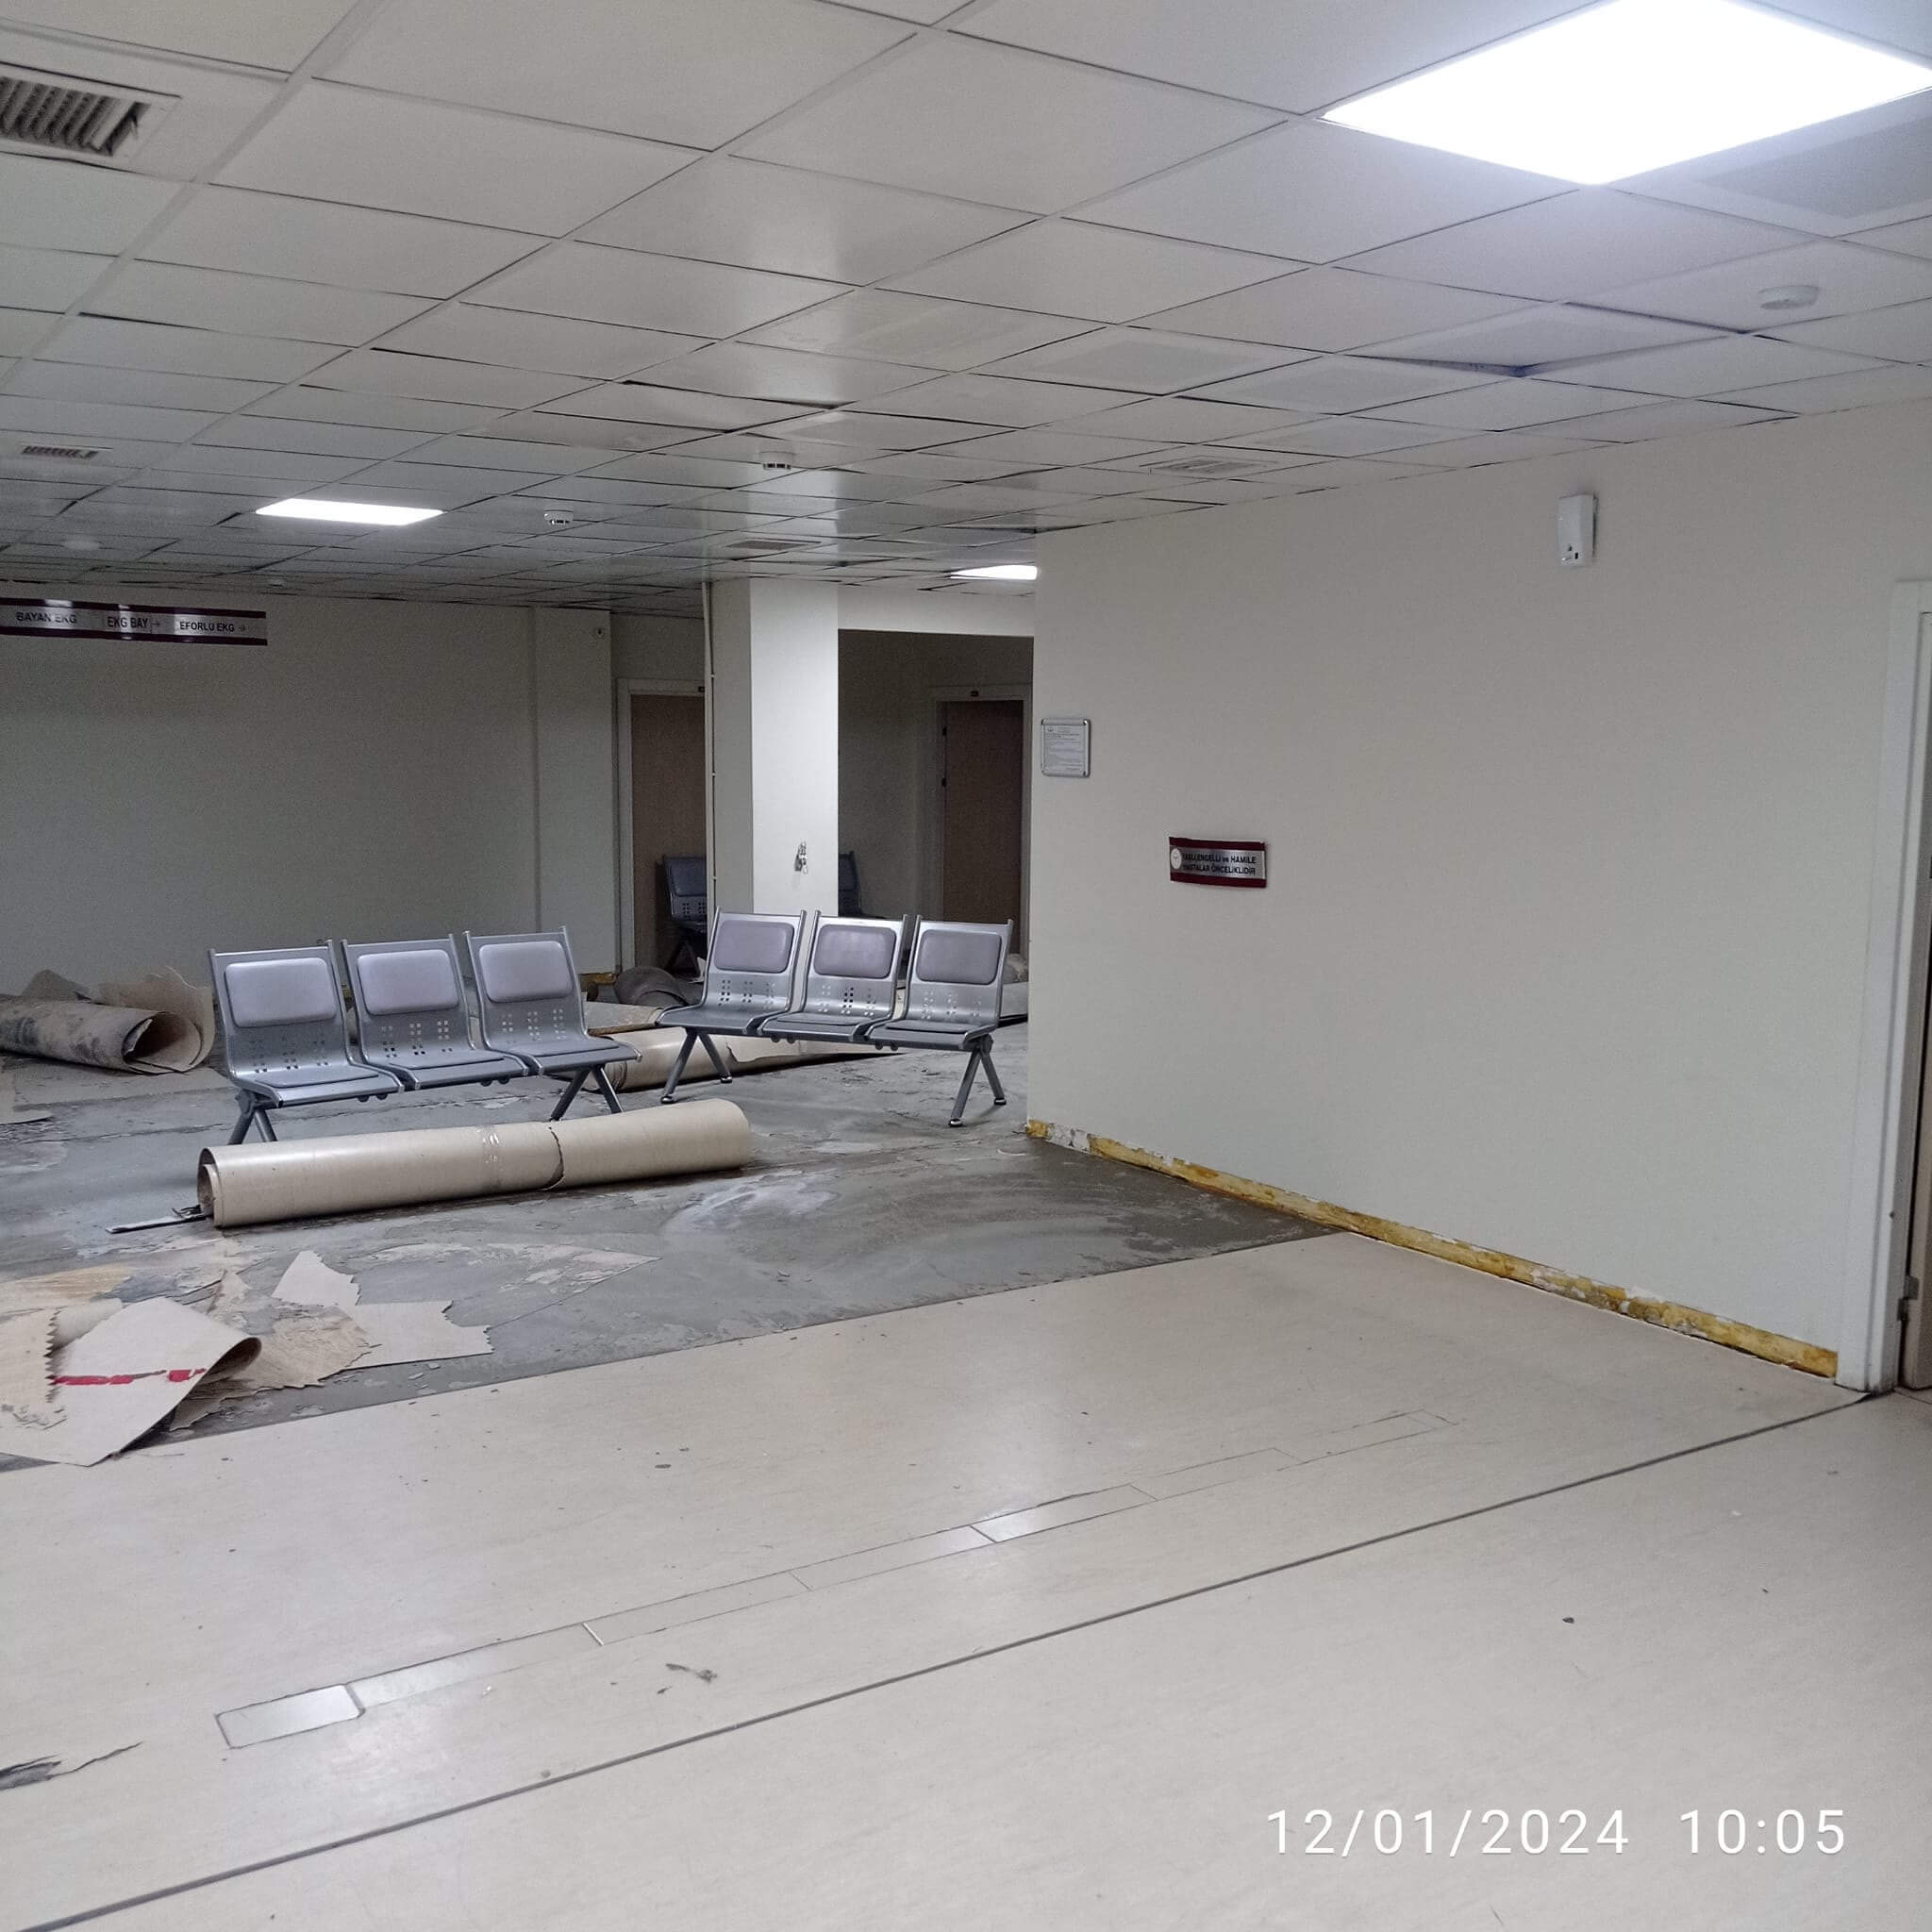 kirikkale-yuksek-ihtisas-hastanesi-yenileniyor-3 Kırıkkale Yüksek İhtisas Hastanesi Yenileniyor